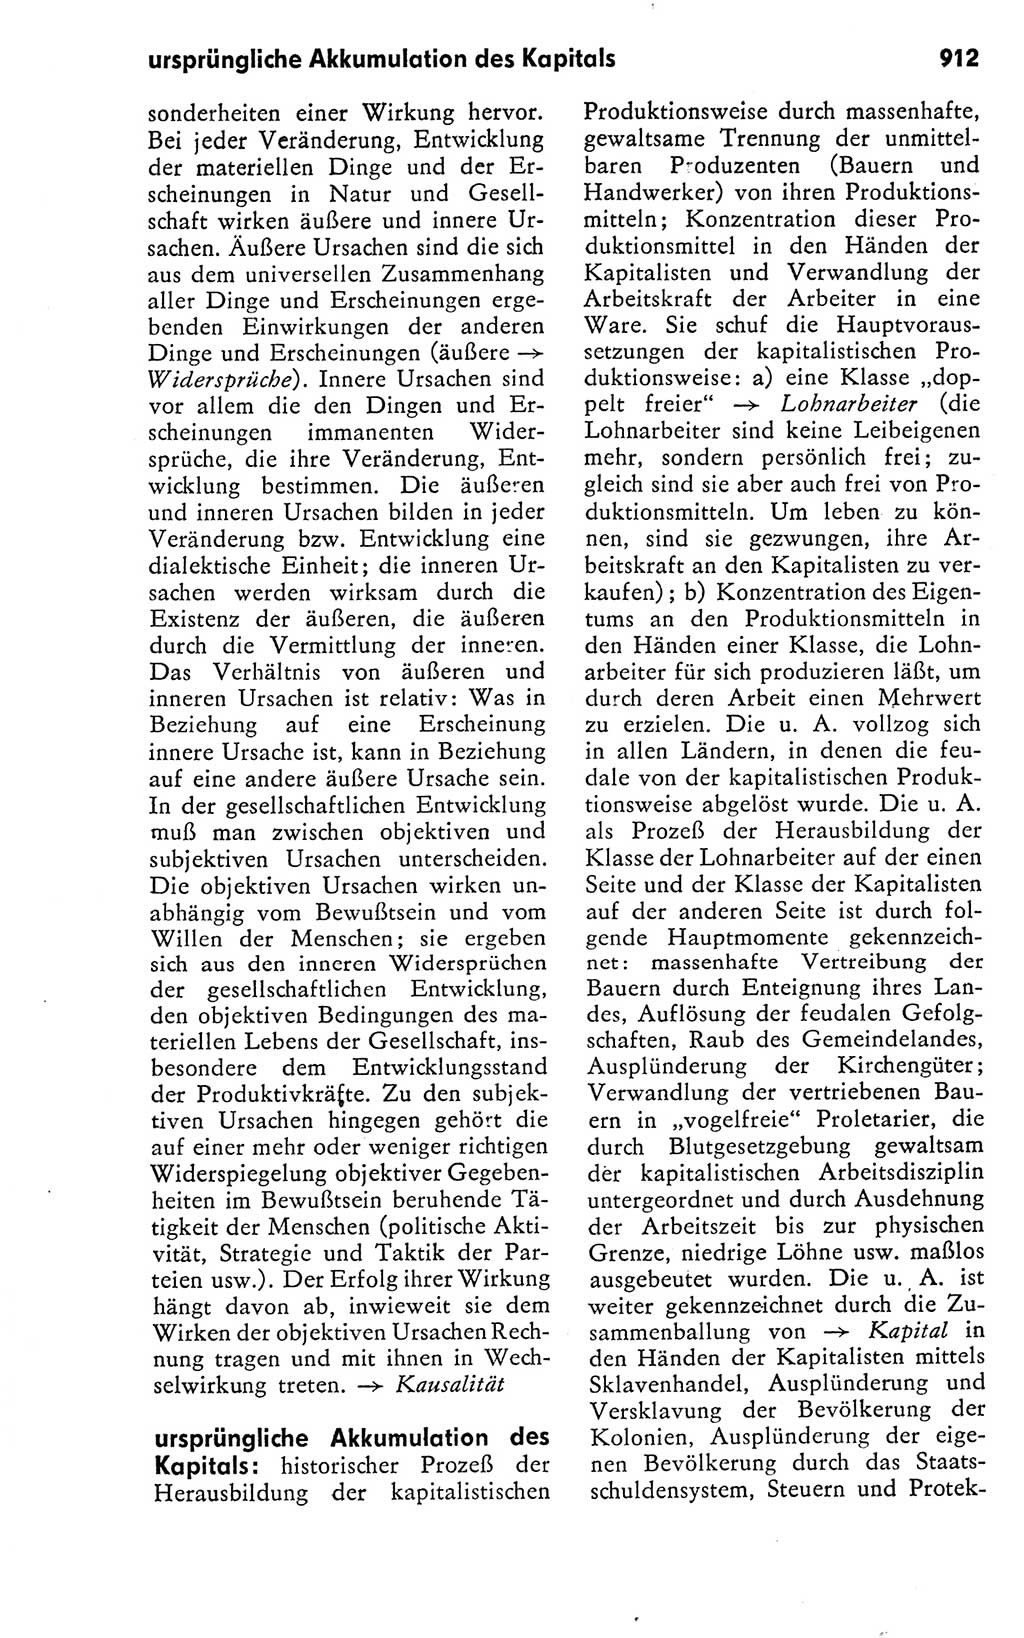 Kleines politisches Wörterbuch [Deutsche Demokratische Republik (DDR)] 1978, Seite 912 (Kl. pol. Wb. DDR 1978, S. 912)